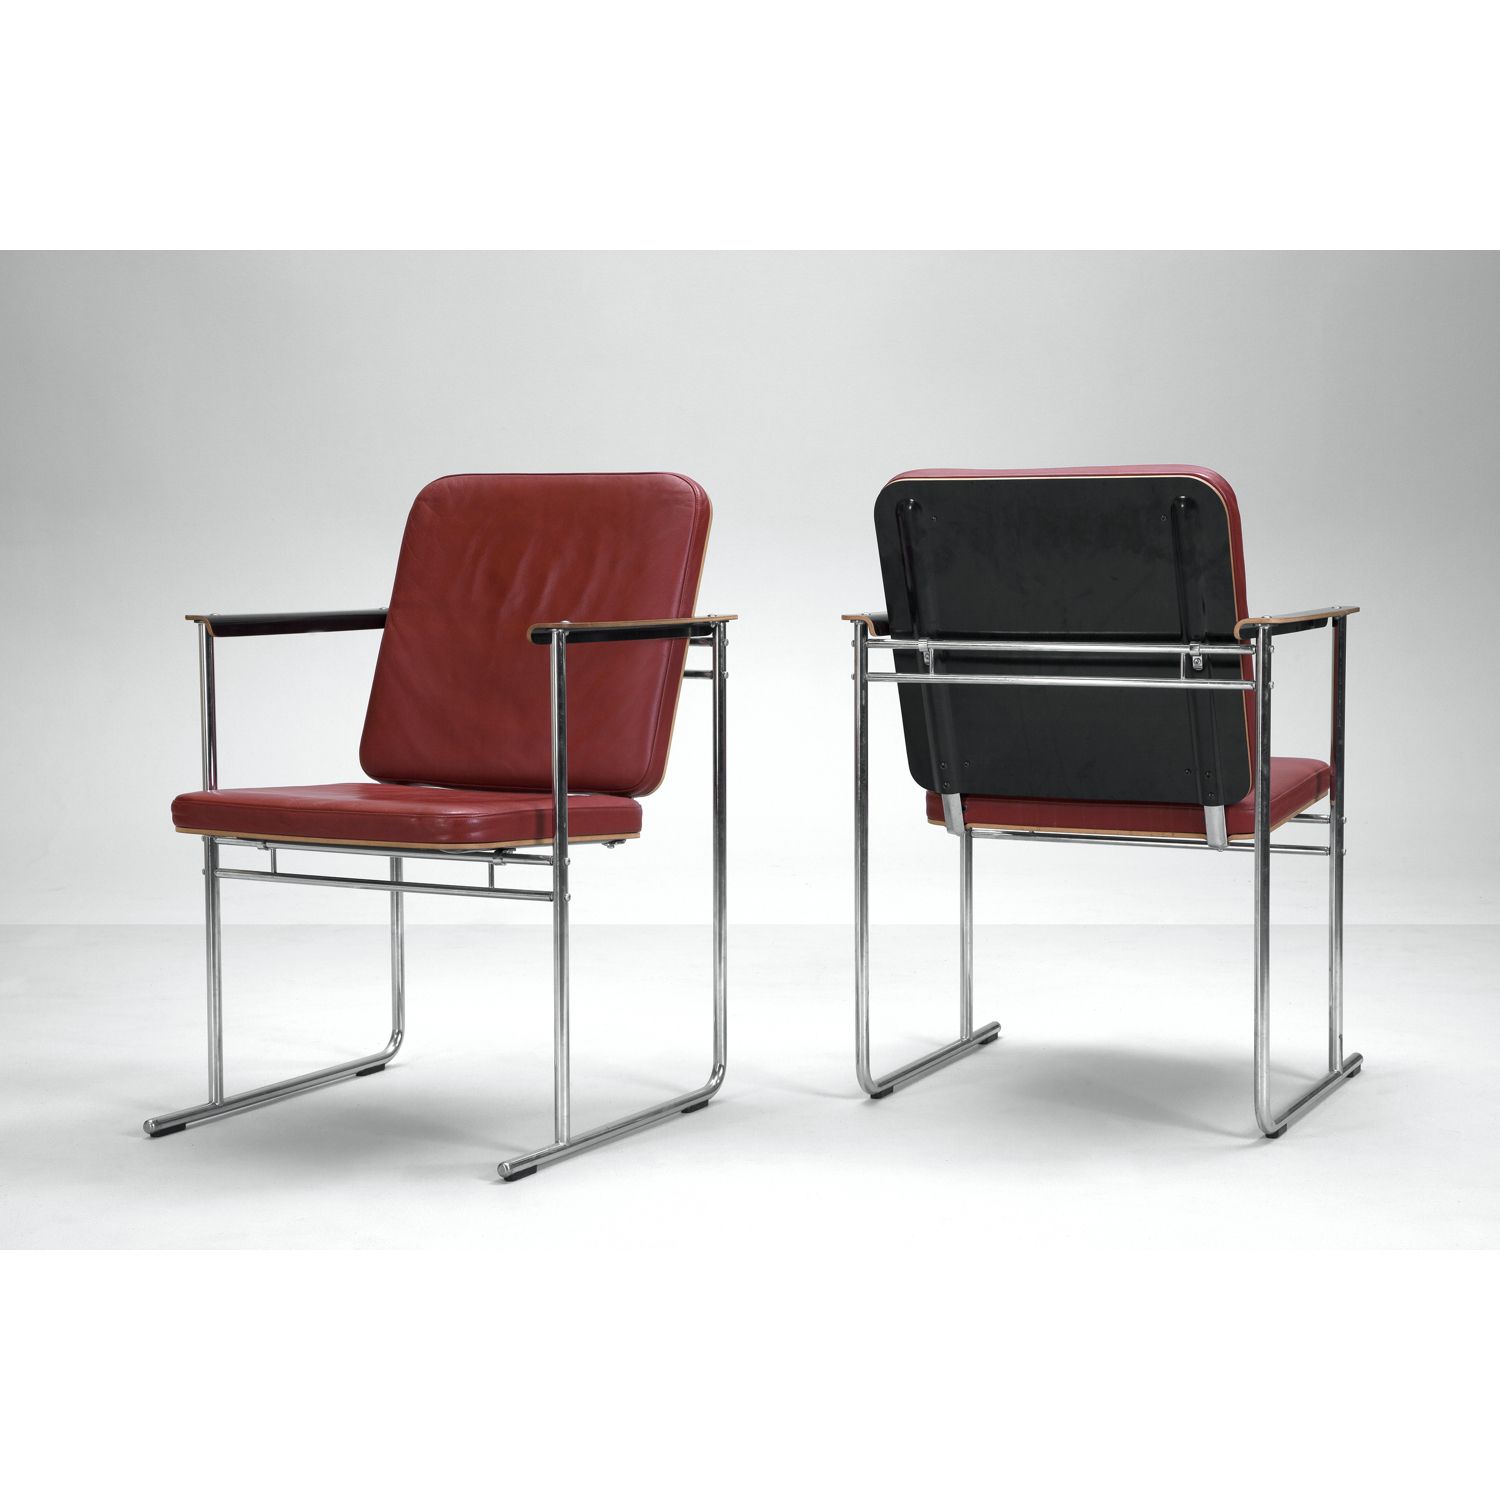 Null 伊尔约-库卡波罗（生于1933年）

一对扶手椅

镀铬金属、皮革和胶合层压木材

阿瓦特版

设计于20世纪80年代

高87×宽60×深5厘米